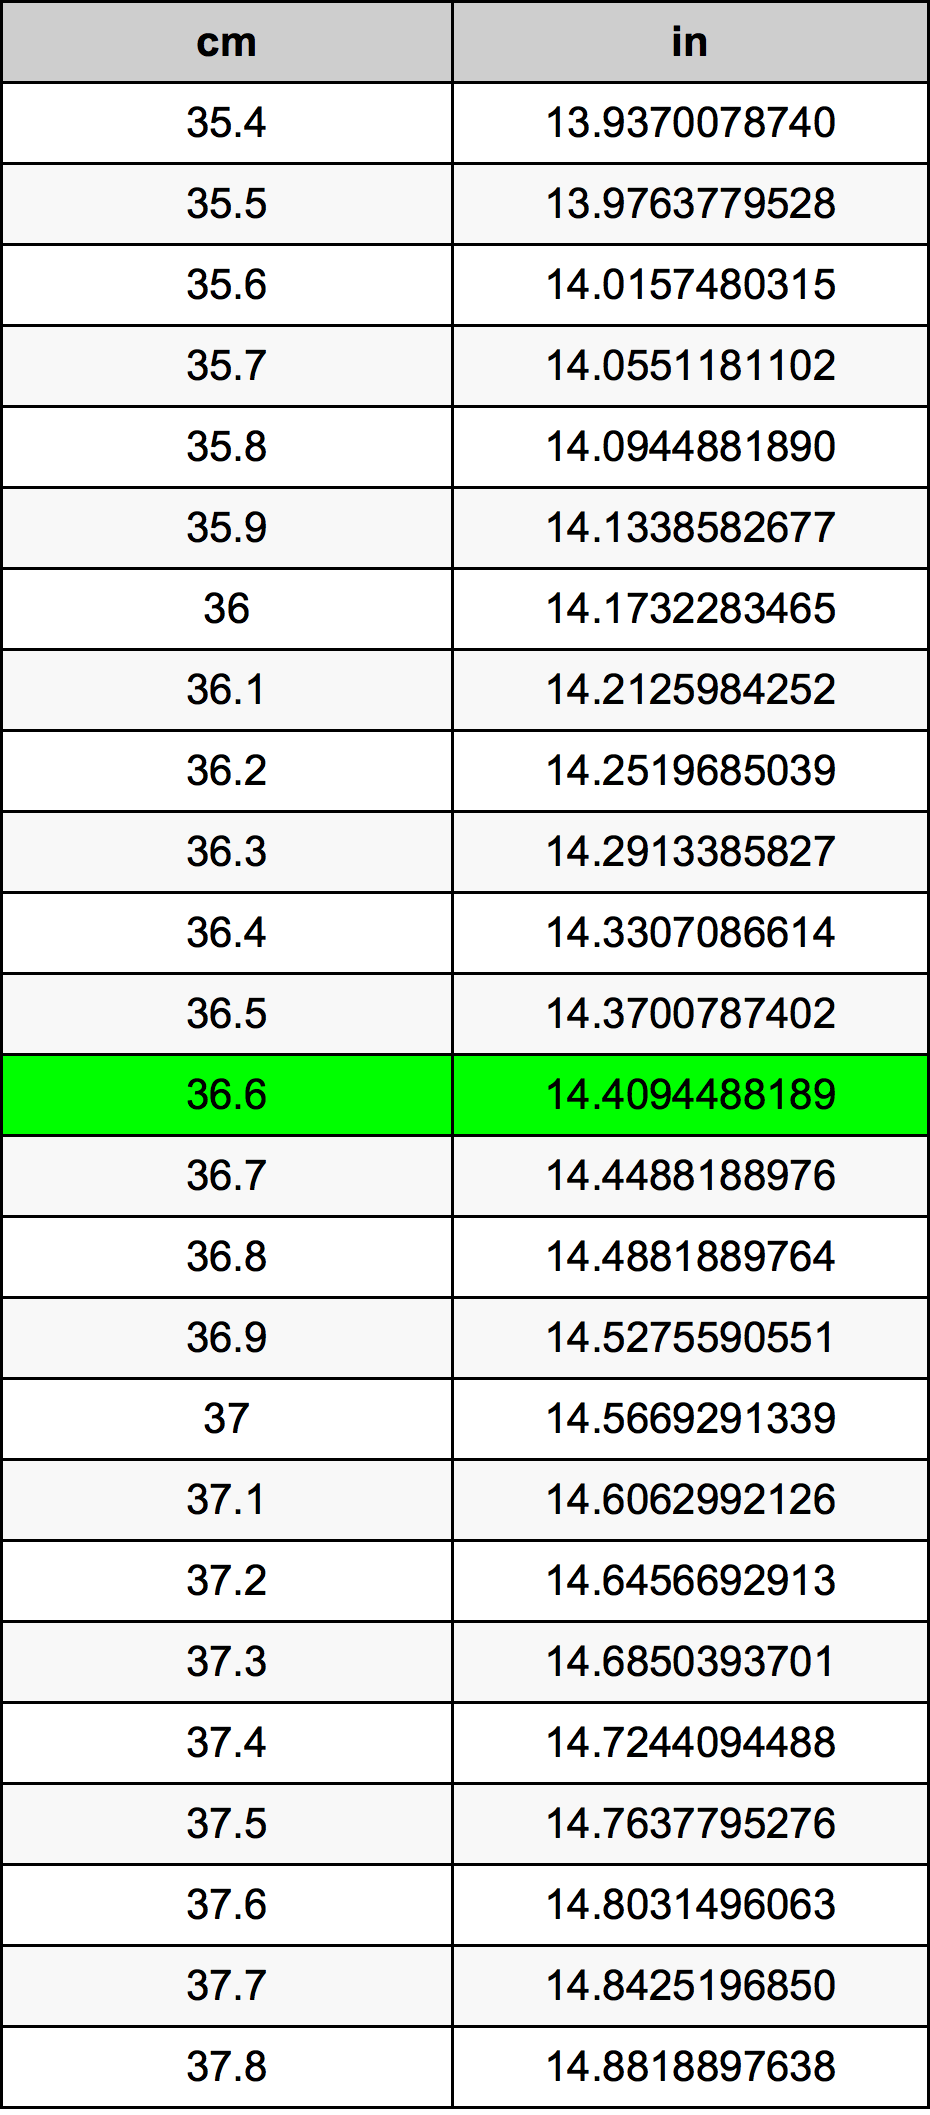 36.6 Centiméter átszámítási táblázat